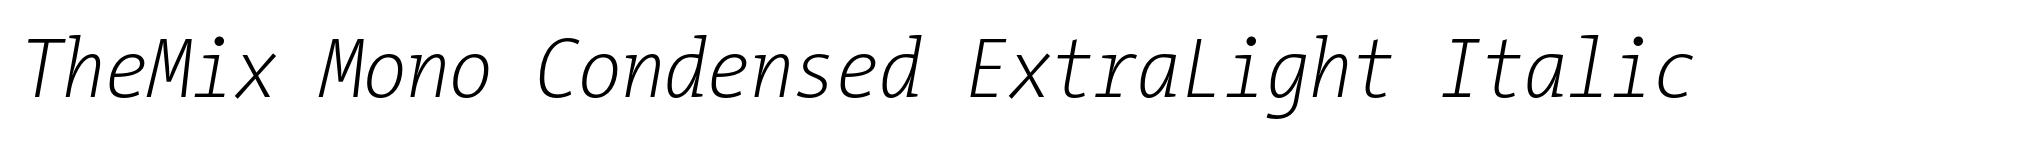 TheMix Mono Condensed ExtraLight Italic image